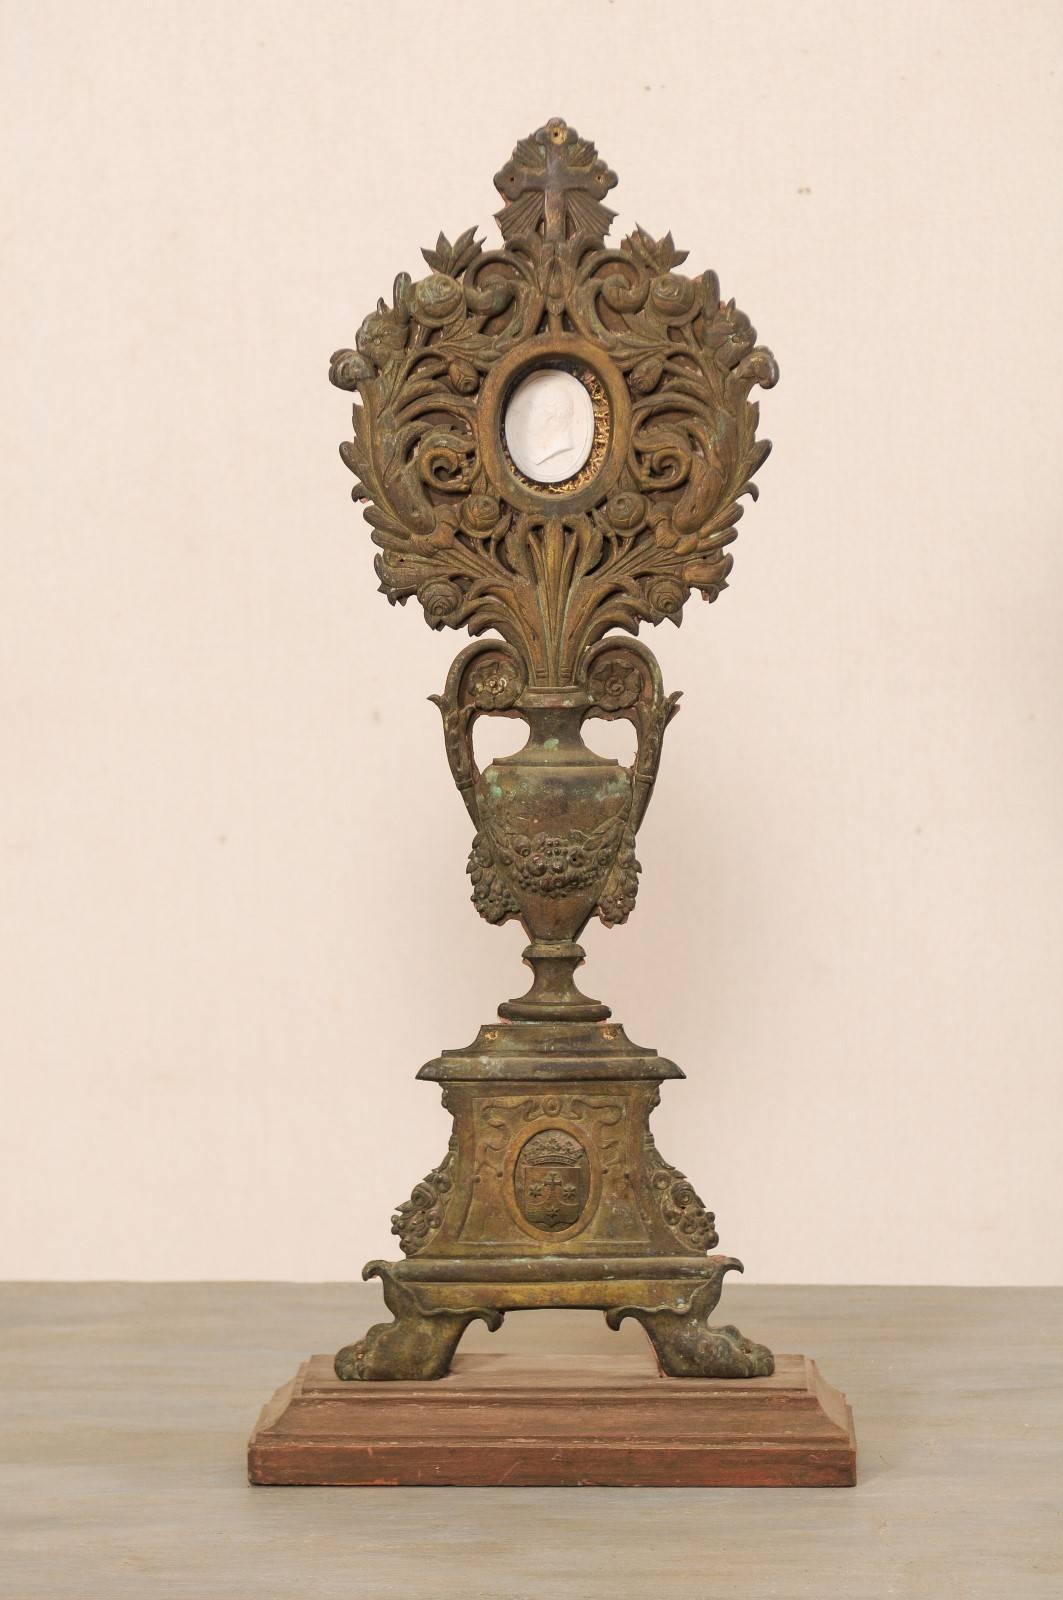 Retable français du 19ème siècle avec intaglio. Ce retable français ancien présente une urne et un motif floral, avec une seule intaille sertie dans le bouquet central supérieur. Ce retable, dont le corps est joliment décoré au repoussé (une